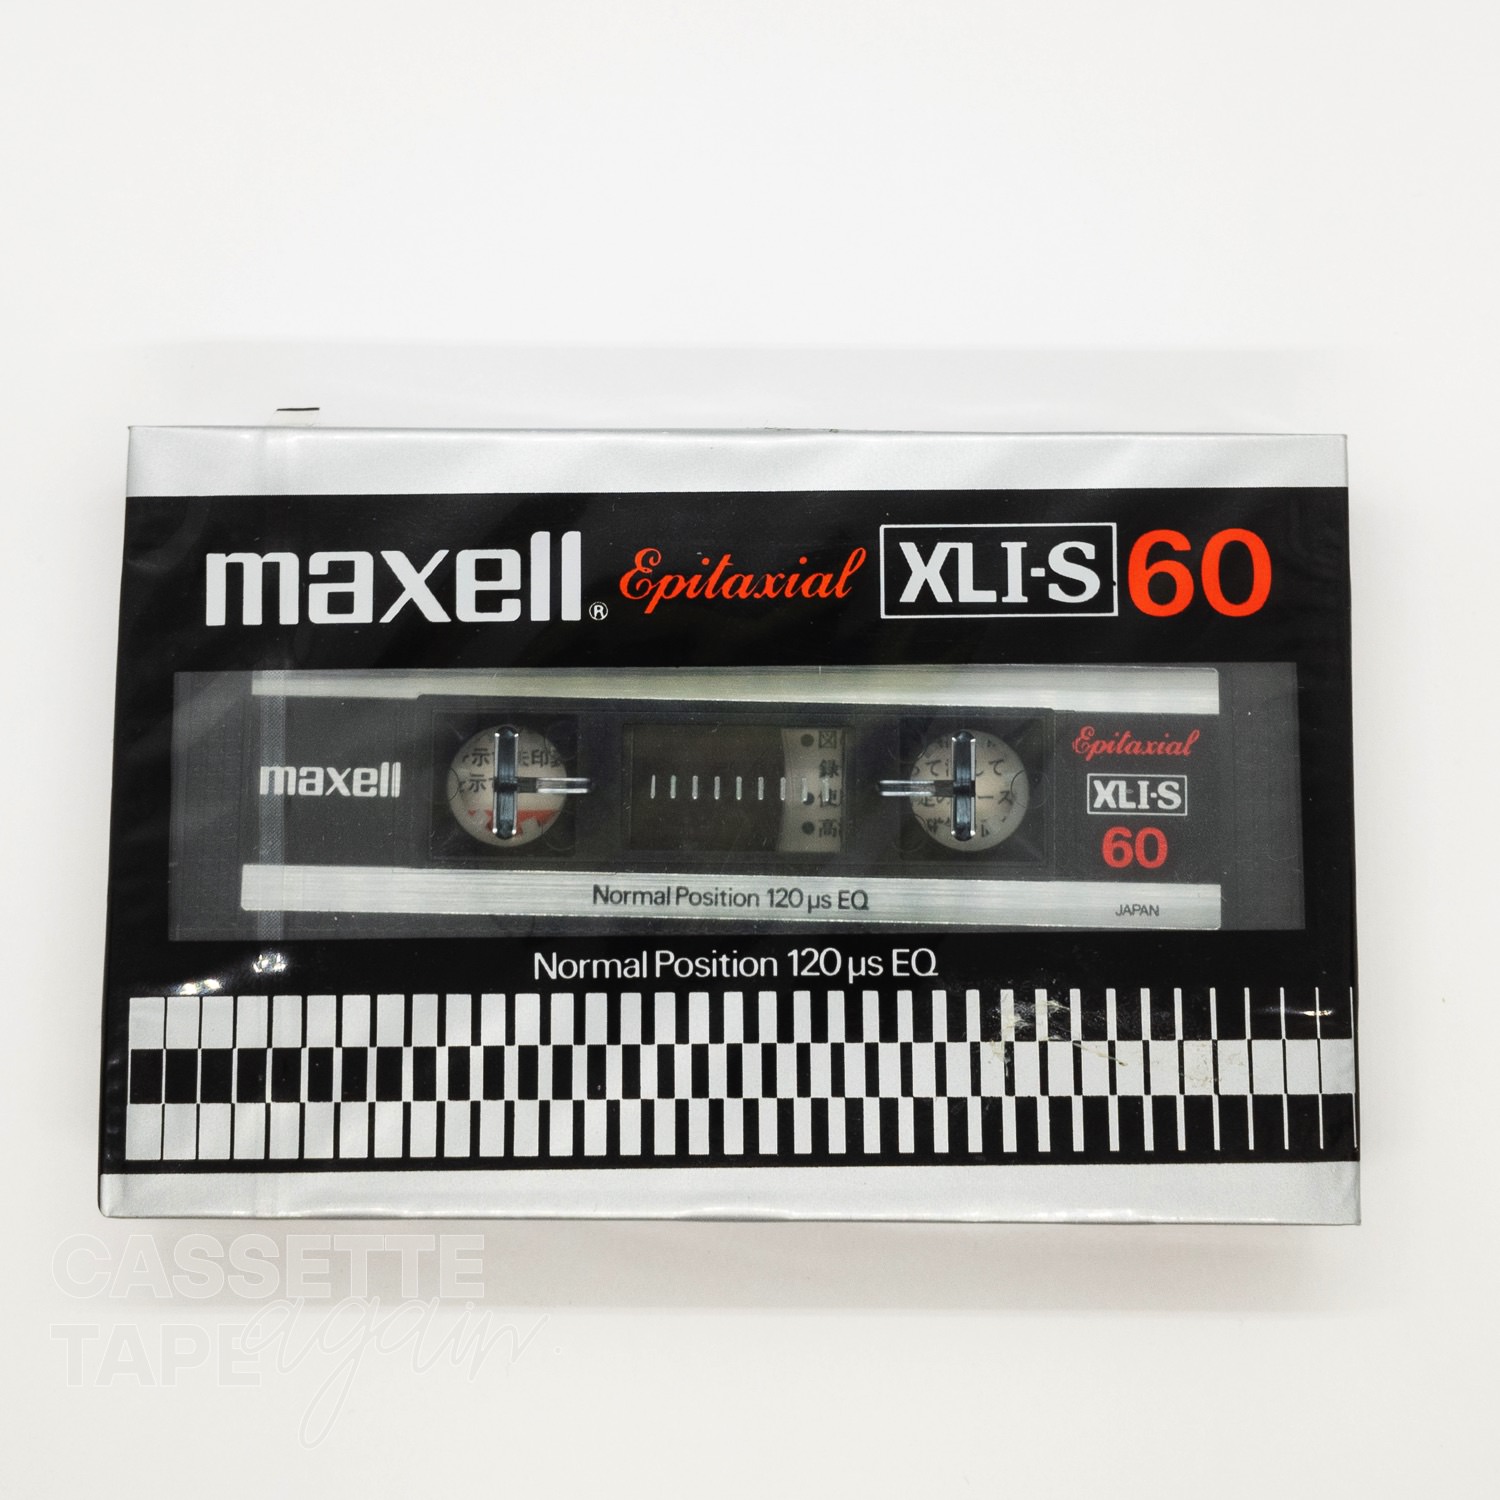 XLI-S 60 / maxell(ノーマル)